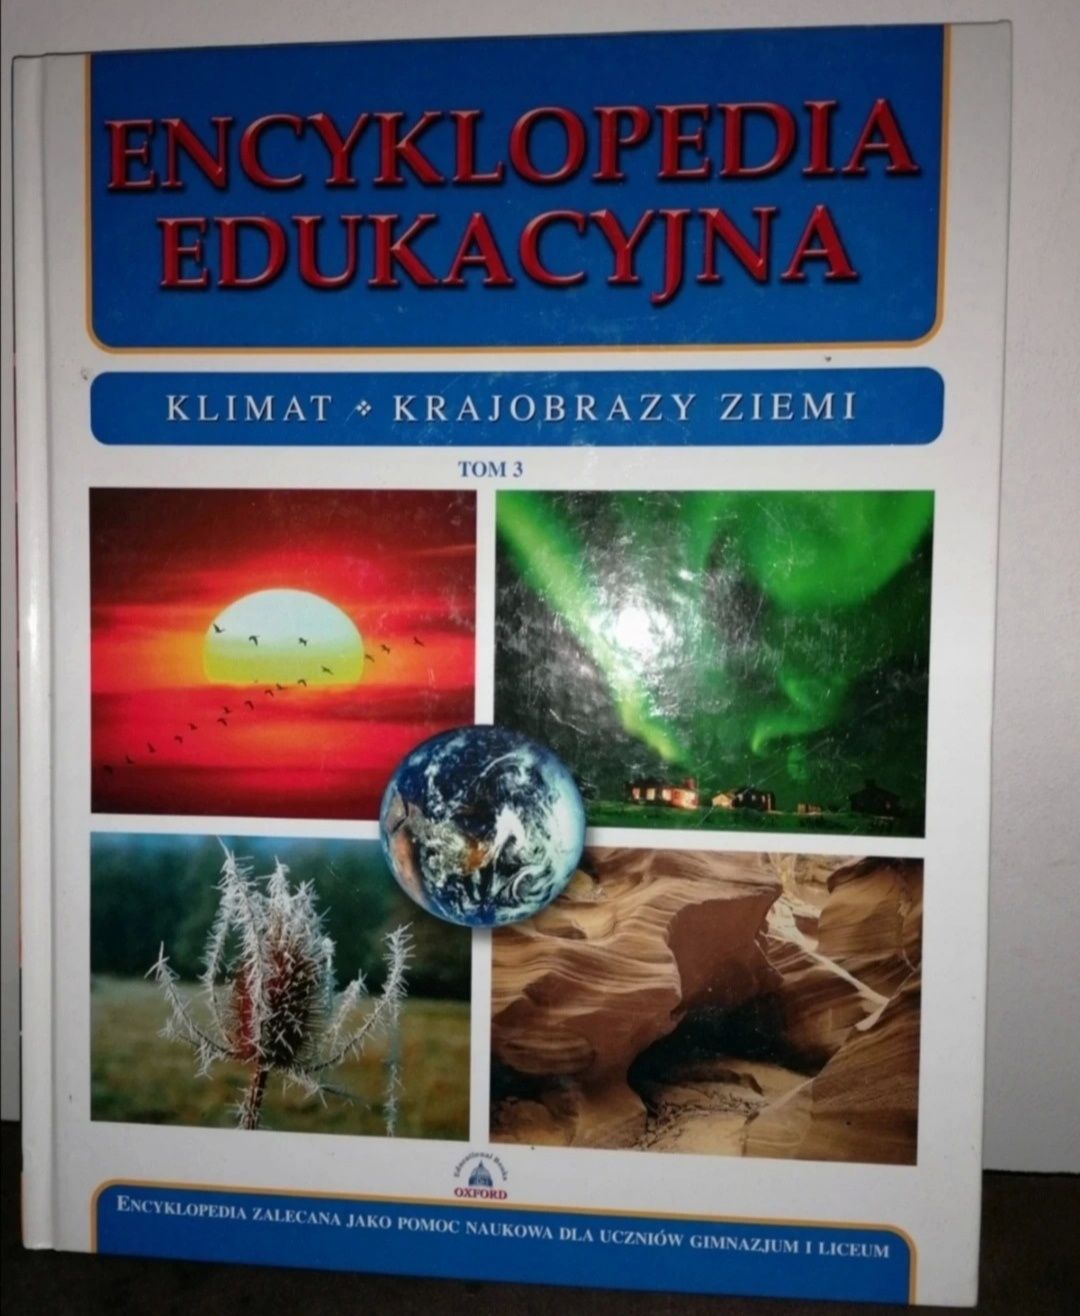 Encyklopedia Edukacyjna - Klimat krajobrazu ziemi